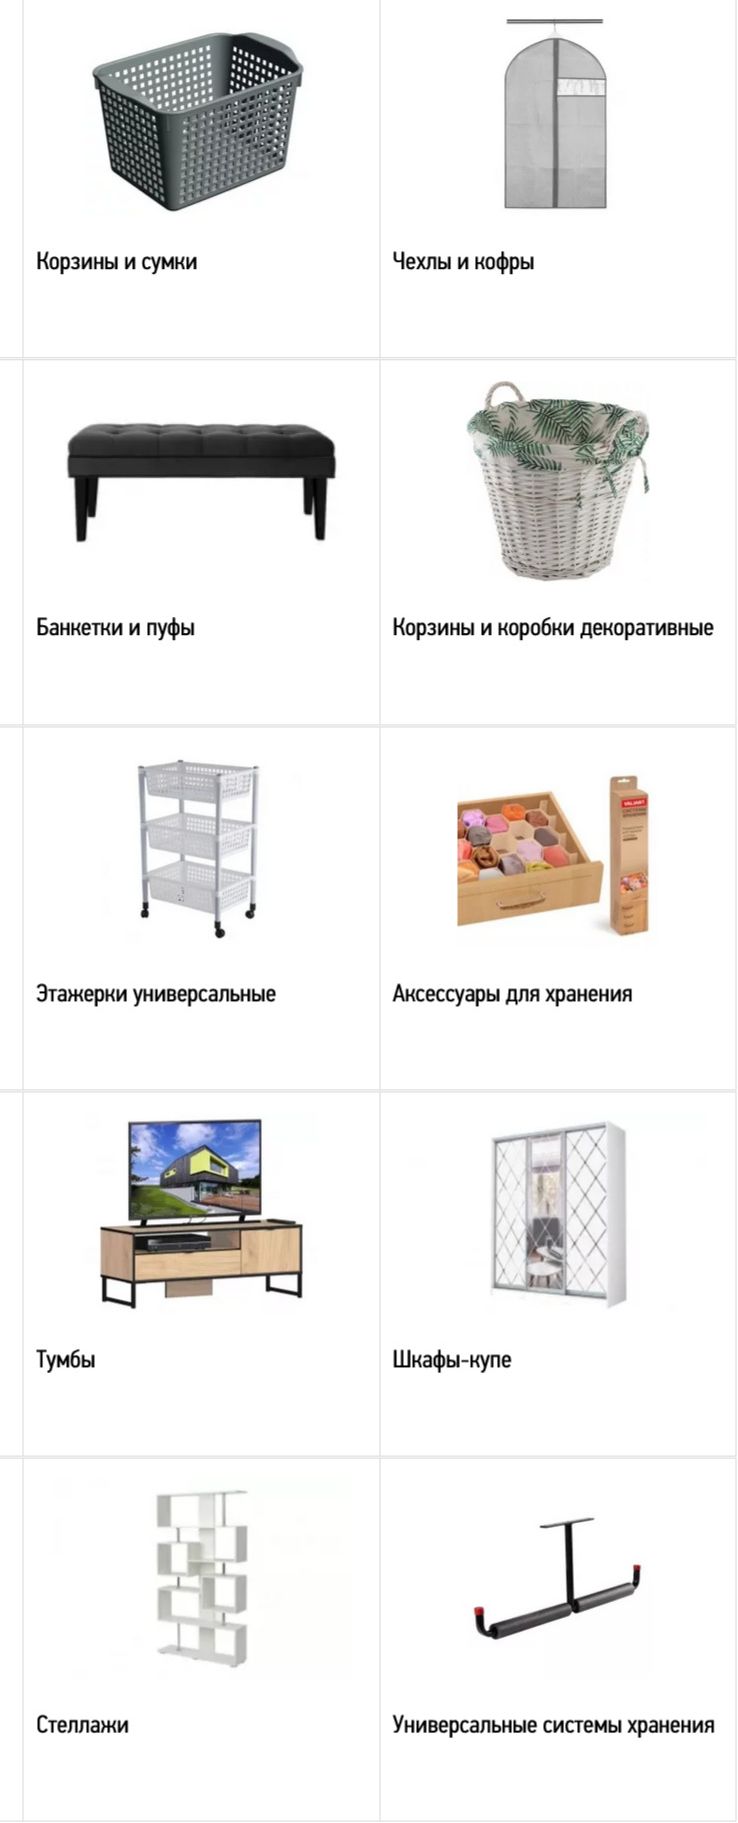 Хранение, мебель в Мегастрой  Москва 